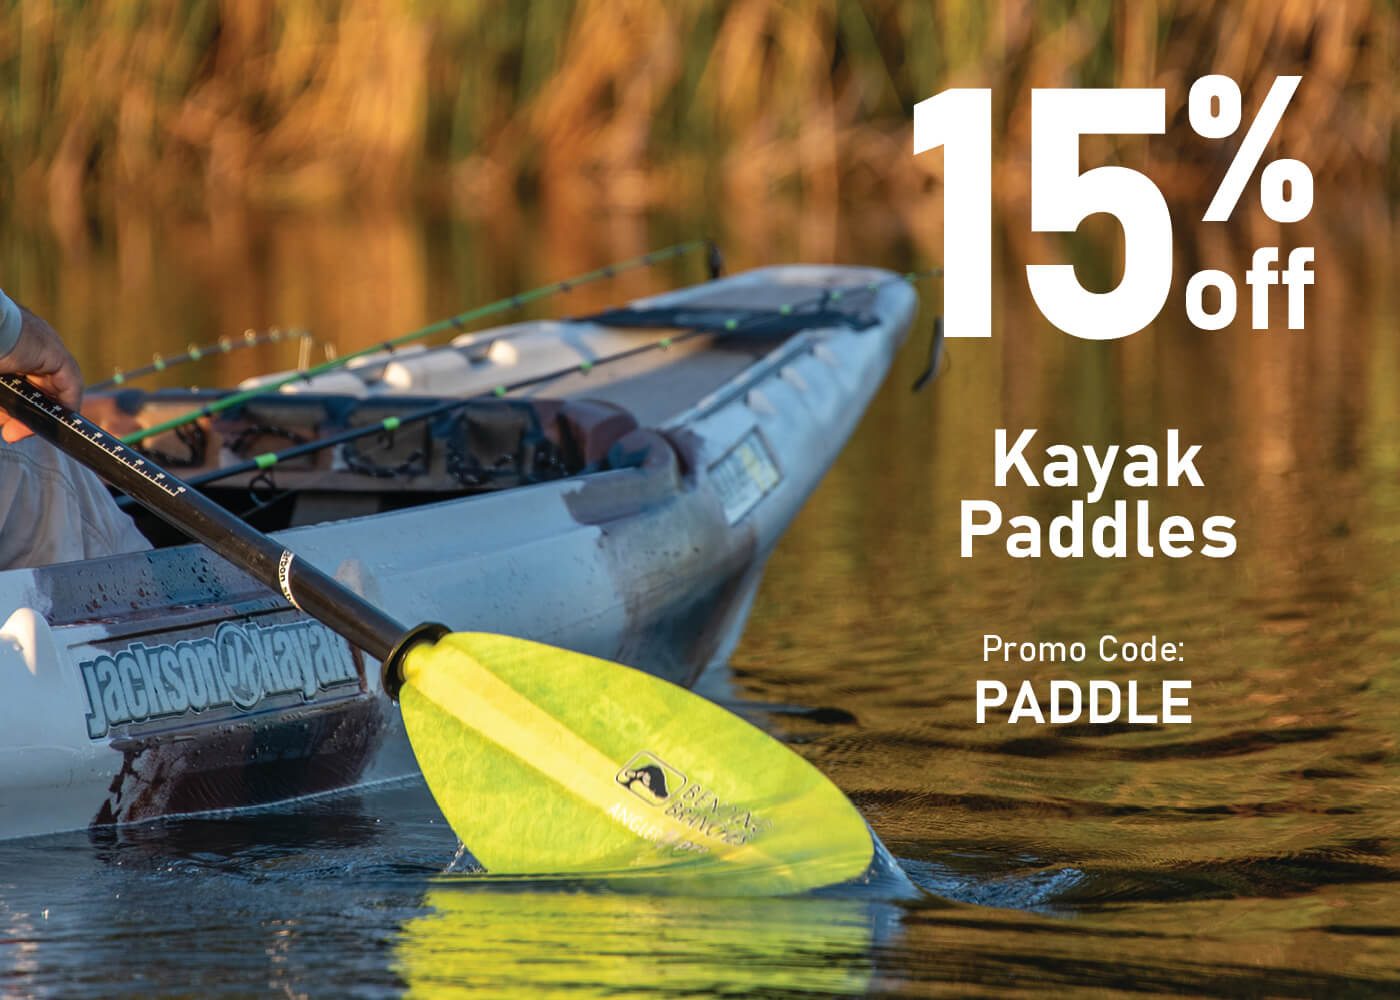 Save 15% on Kayak Paddles